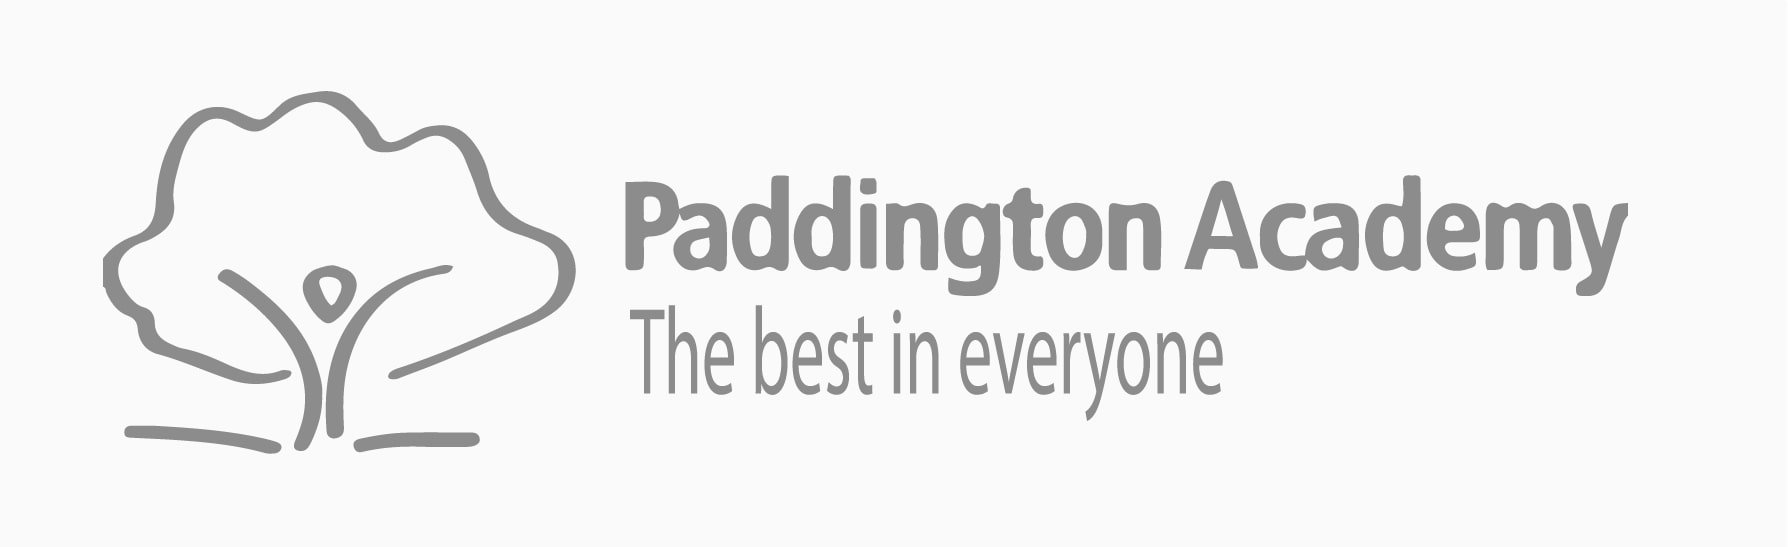 PaddingtonAcademy-01-min